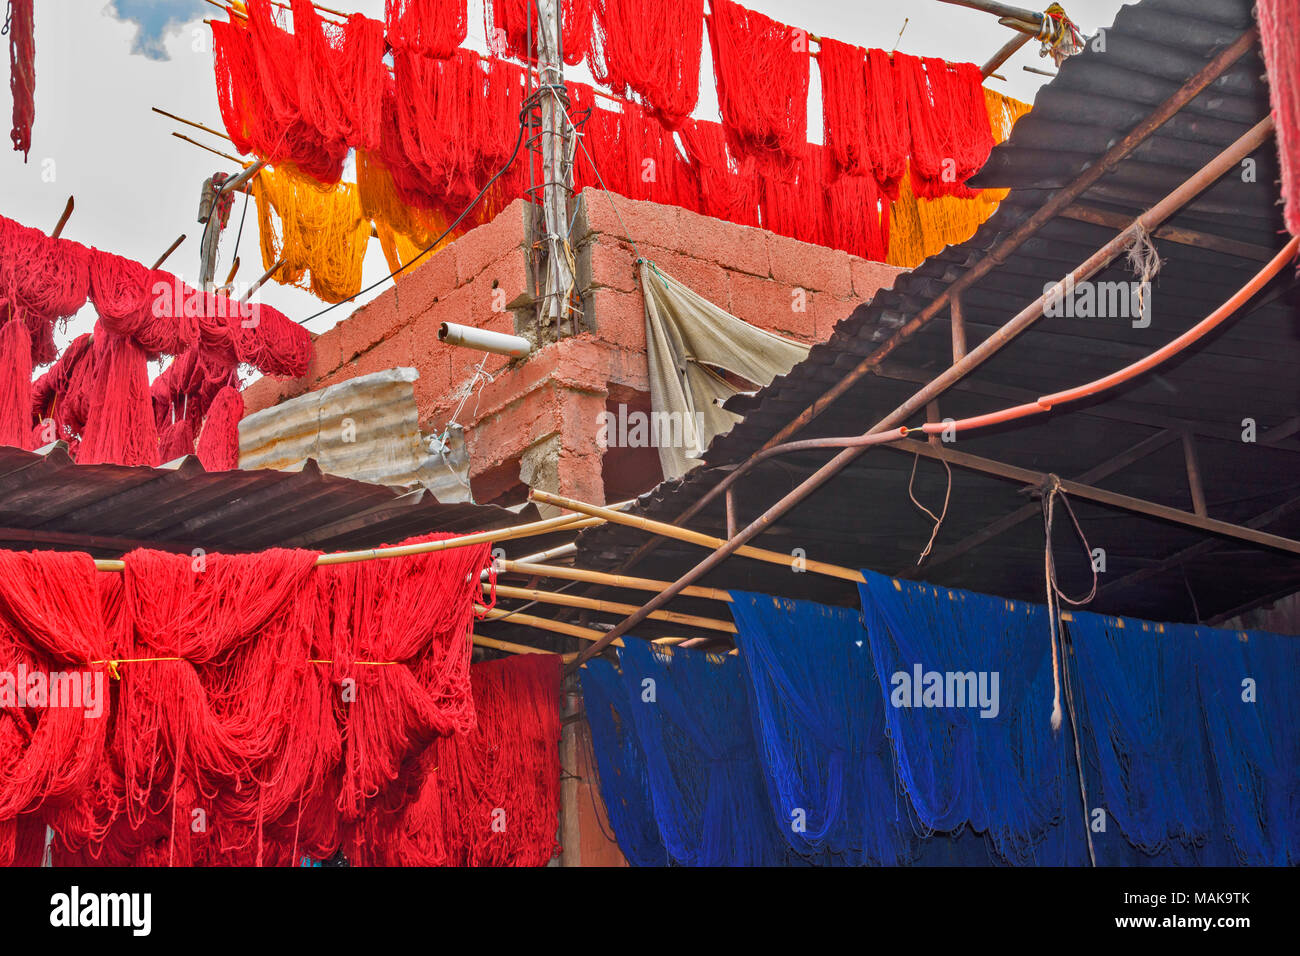 Il Marocco Marrakech Jemaa el Fna MEDINA SOUK matasse di tinte blu e rosso di lana colorati appesi al sole ad asciugare Foto Stock